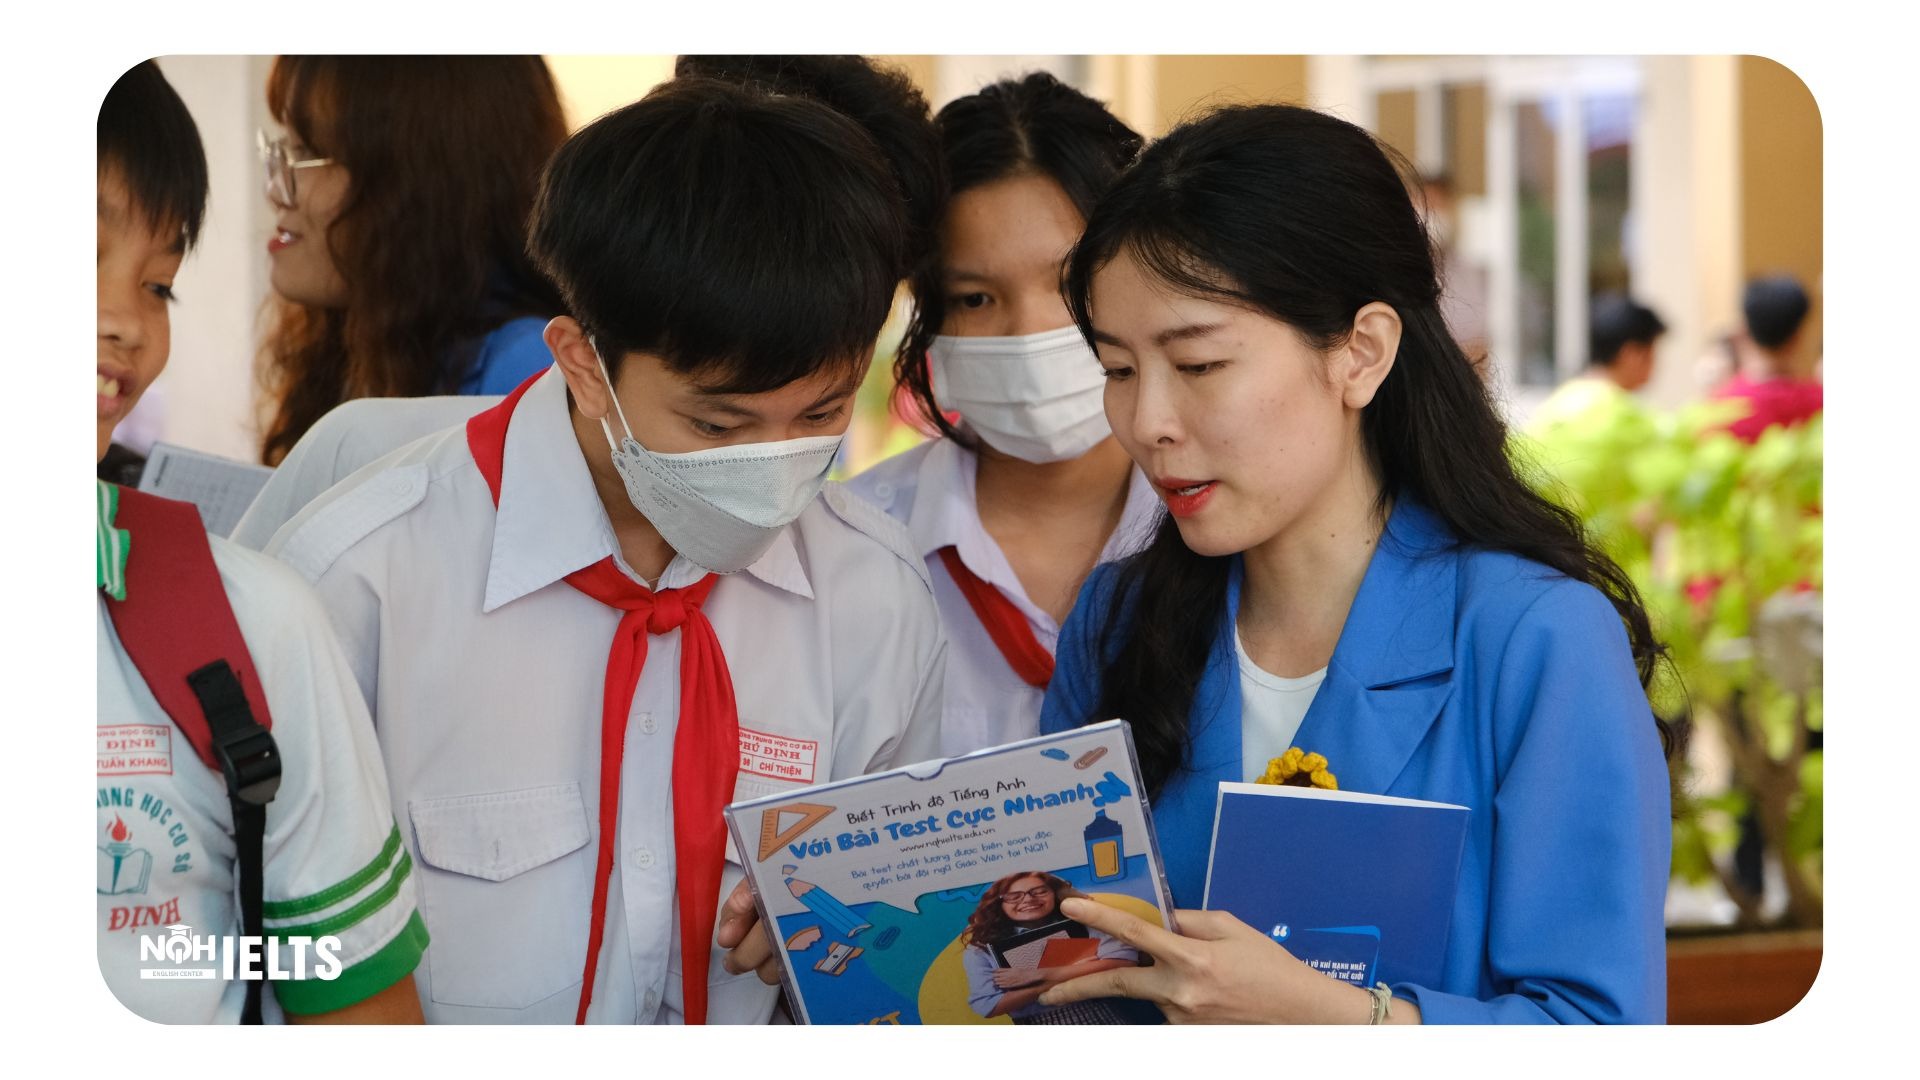 Hoạt Động Triển Lãm của NQH IELTS Tại Trường THPT Nguyễn Tất Thành